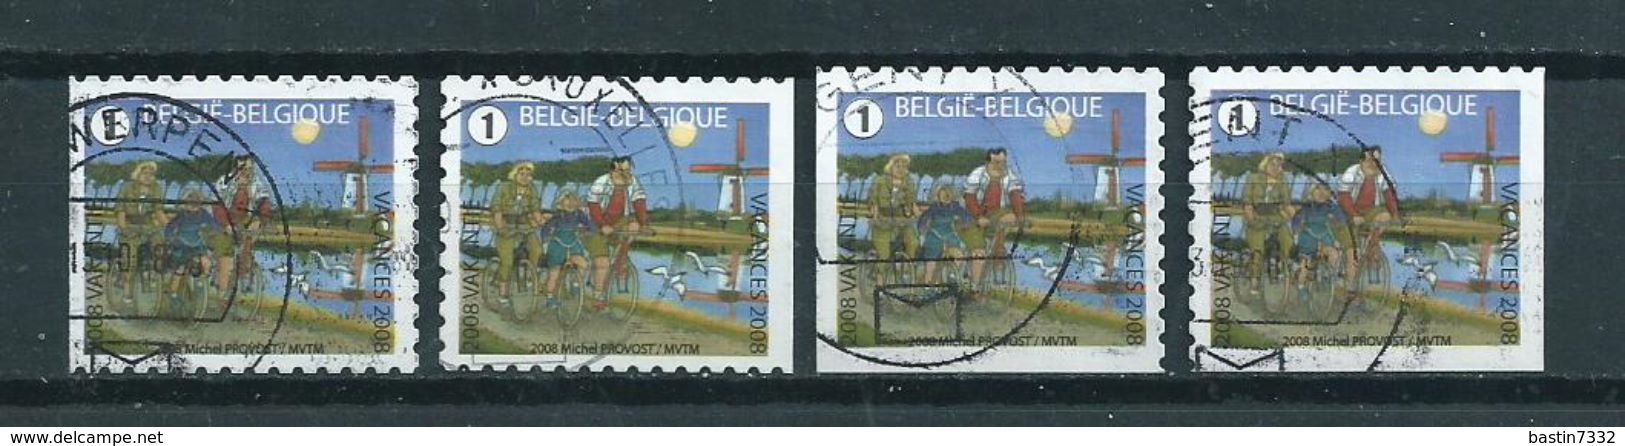 2008 Belgium Complete Set Vacation Booklet Stamps Used/gebruikt/oblitere - Gebruikt